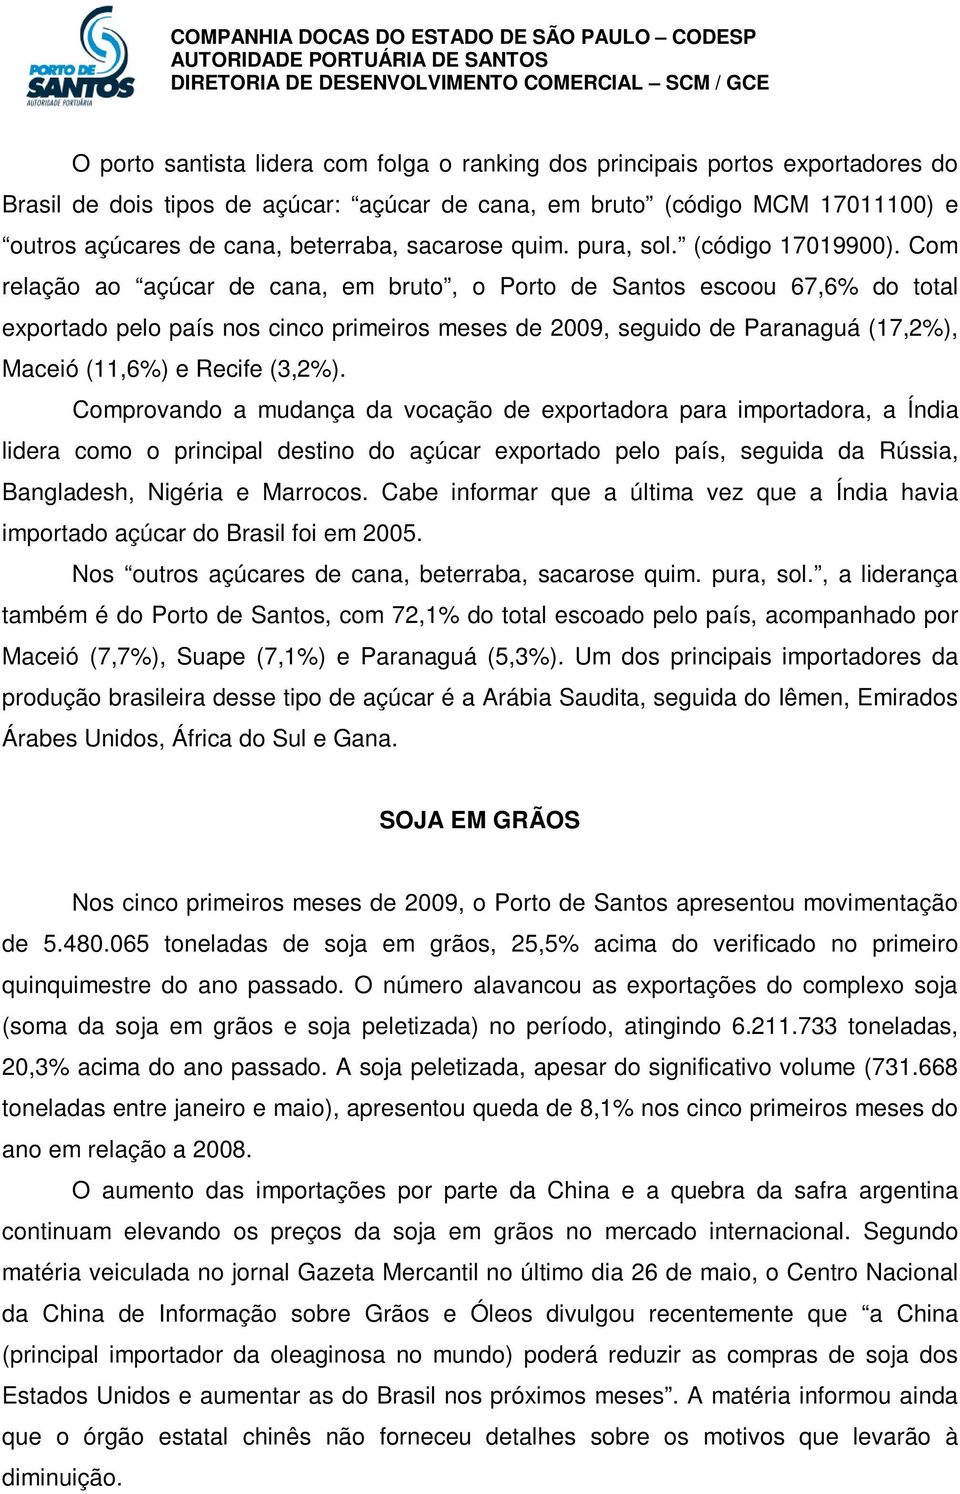 Com relação ao açúcar de cana, em bruto, o Porto de Santos escoou 67,6% do total exportado pelo país nos cinco primeiros meses de 2009, seguido de Paranaguá (17,2%), Maceió (11,6%) e Recife (3,2%).